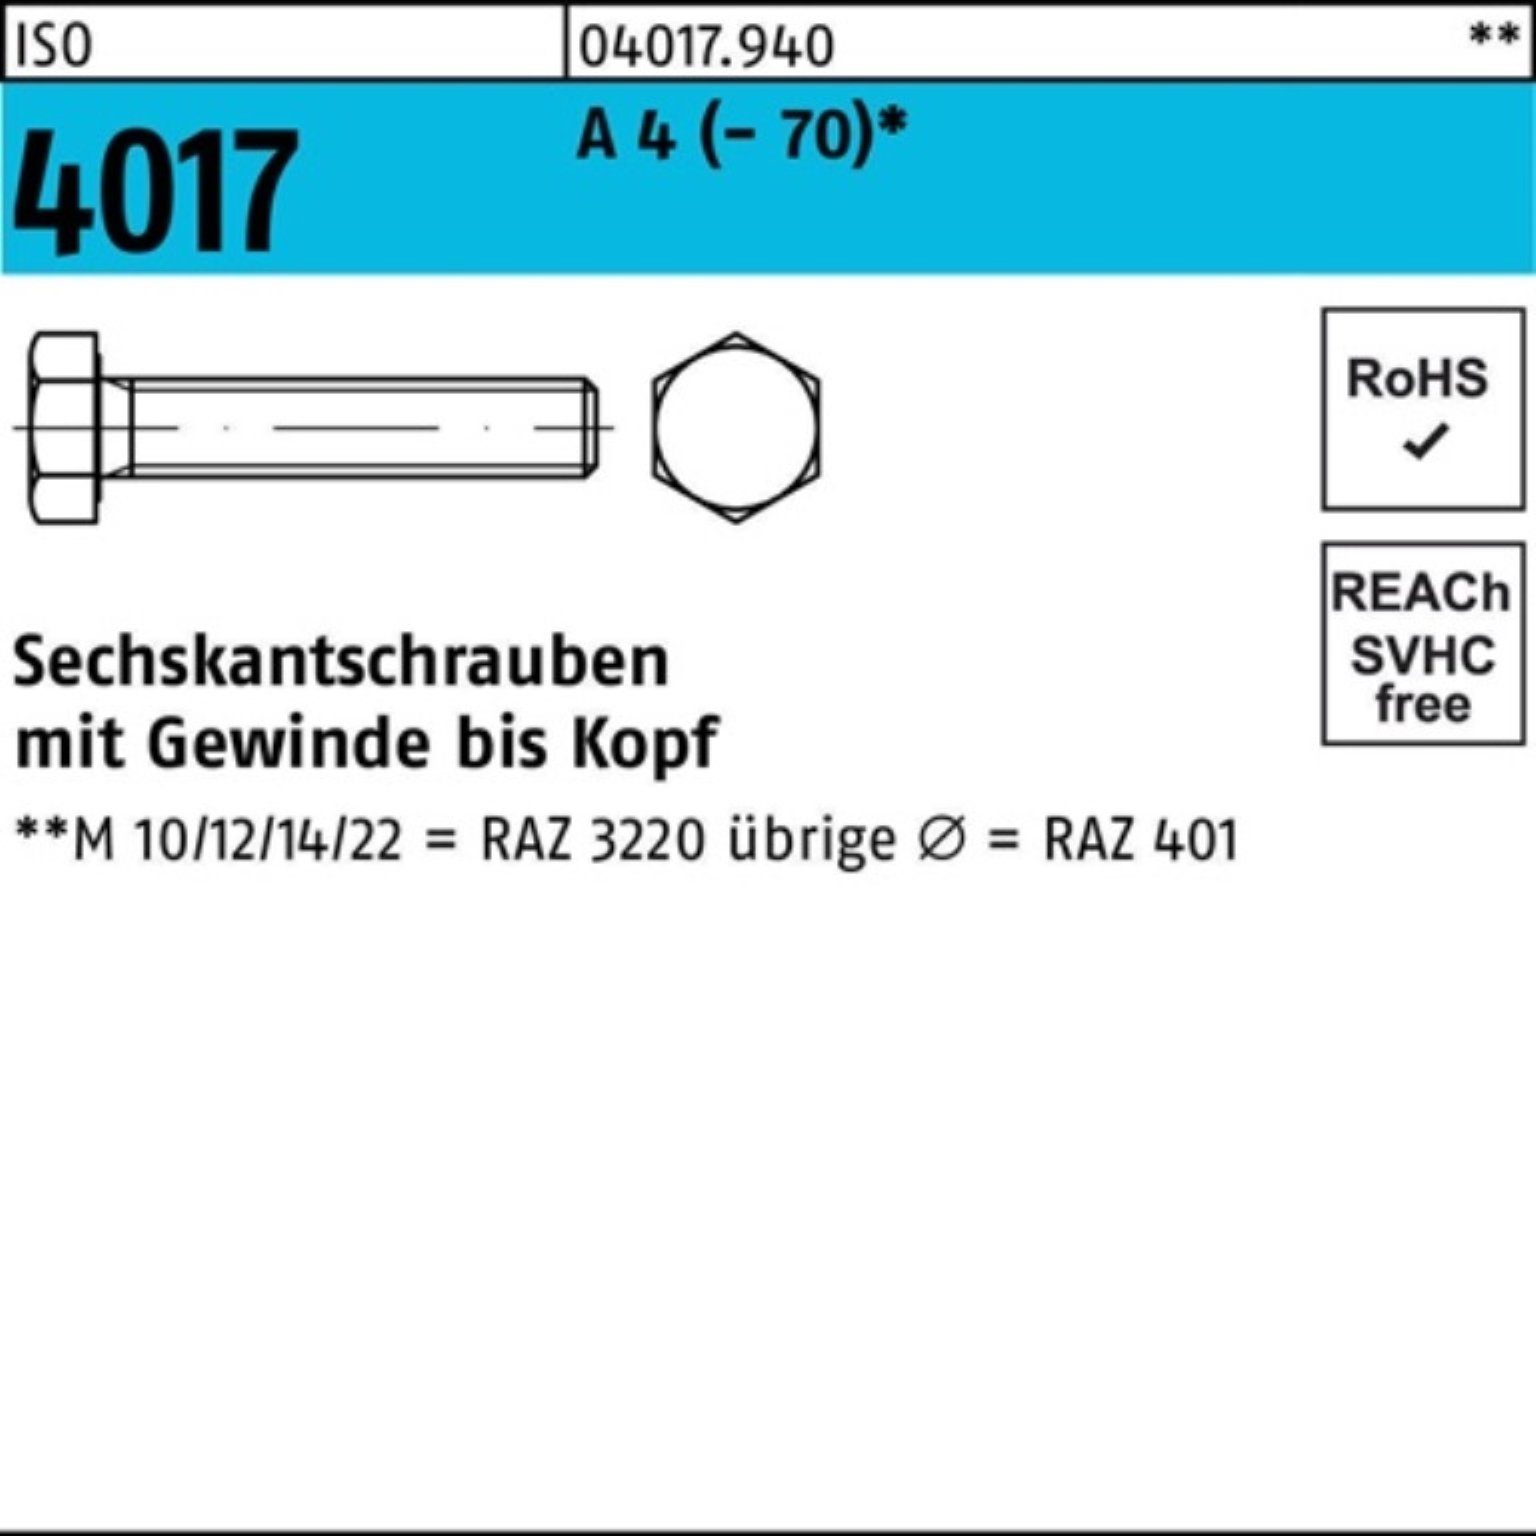 Bufab Sechskantschraube 100er Pack Sechskantschraube ISO 4017 VG M10x 150 A 4 (70) 1 Stück